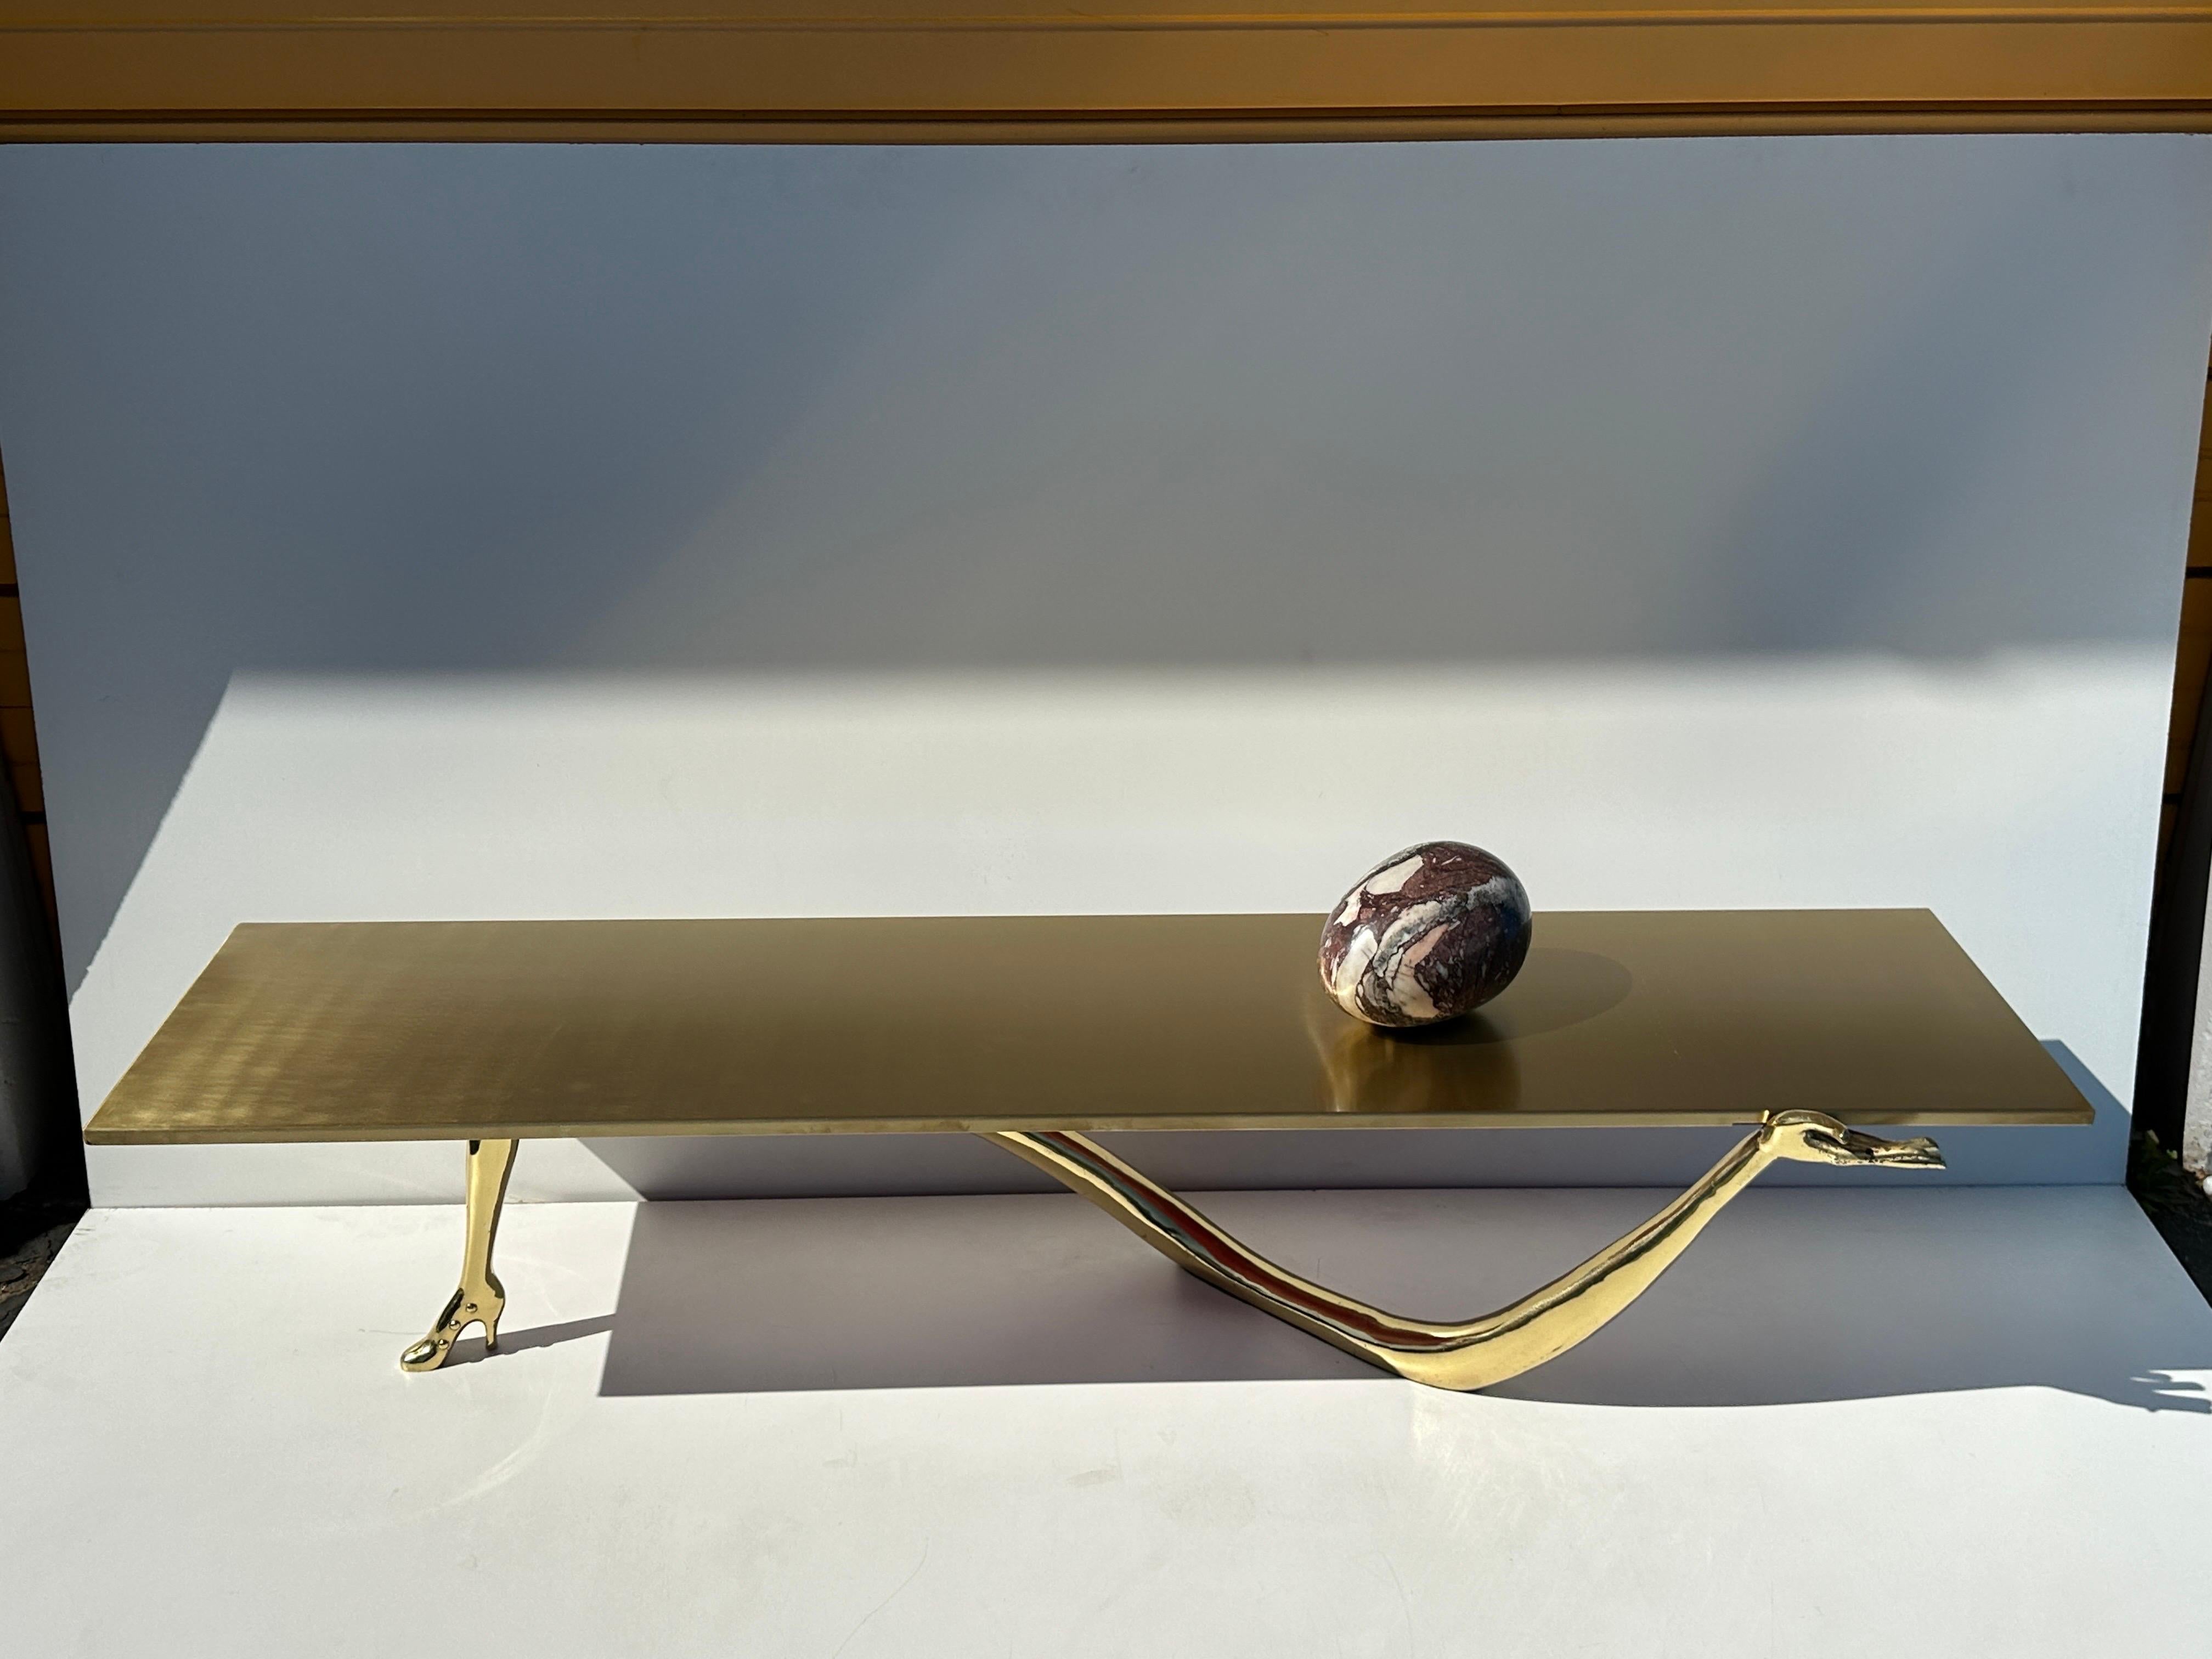 Table basse en laiton LEDA de Salvador Dali. Magnifique exemple de la sculpture surréaliste de Dali, composée d'une main et d'un talon haut, tenant un plateau de table en laiton brossé avec un œuf en marbre. Conçu à l'origine en 1935, fabriqué dans